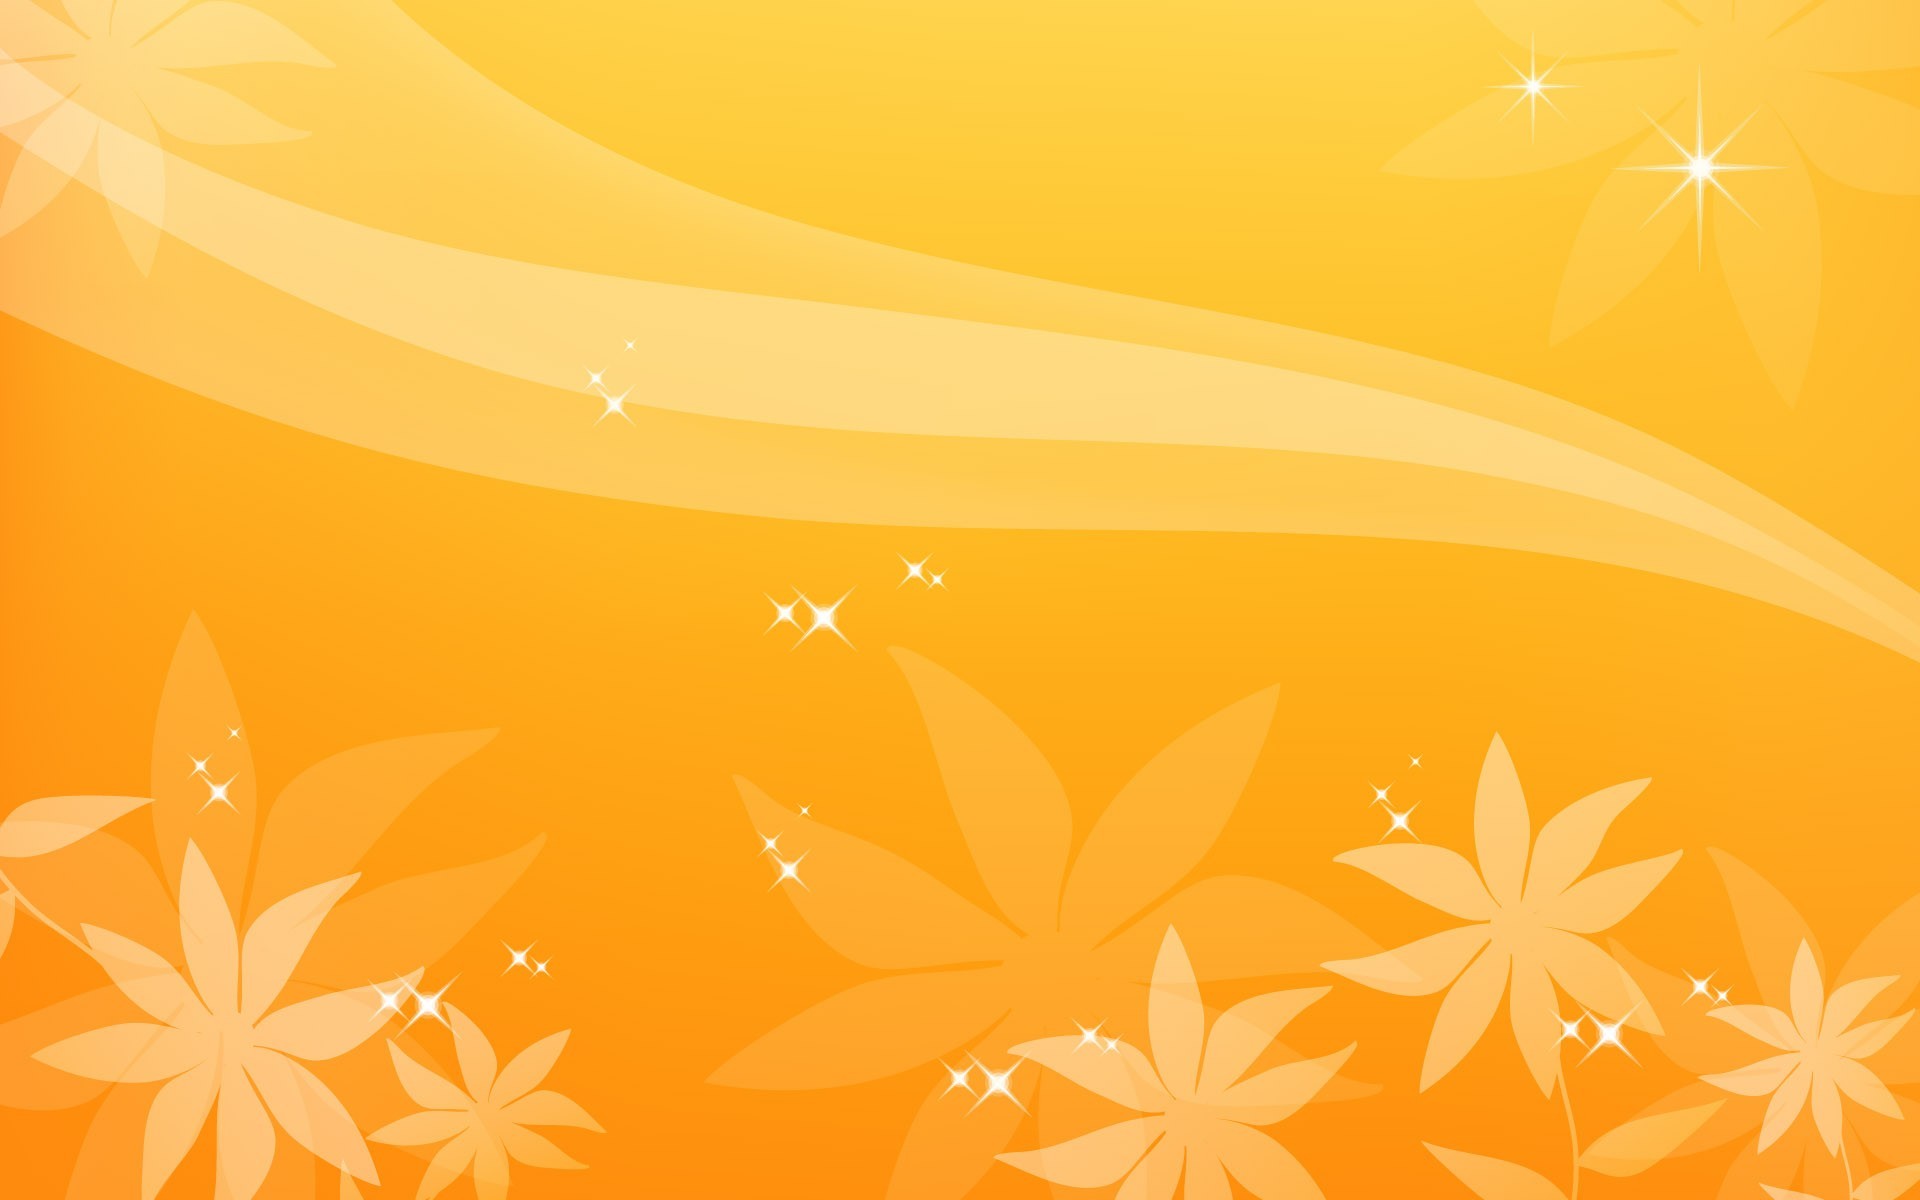 Starry Flashes on Orange Background Images